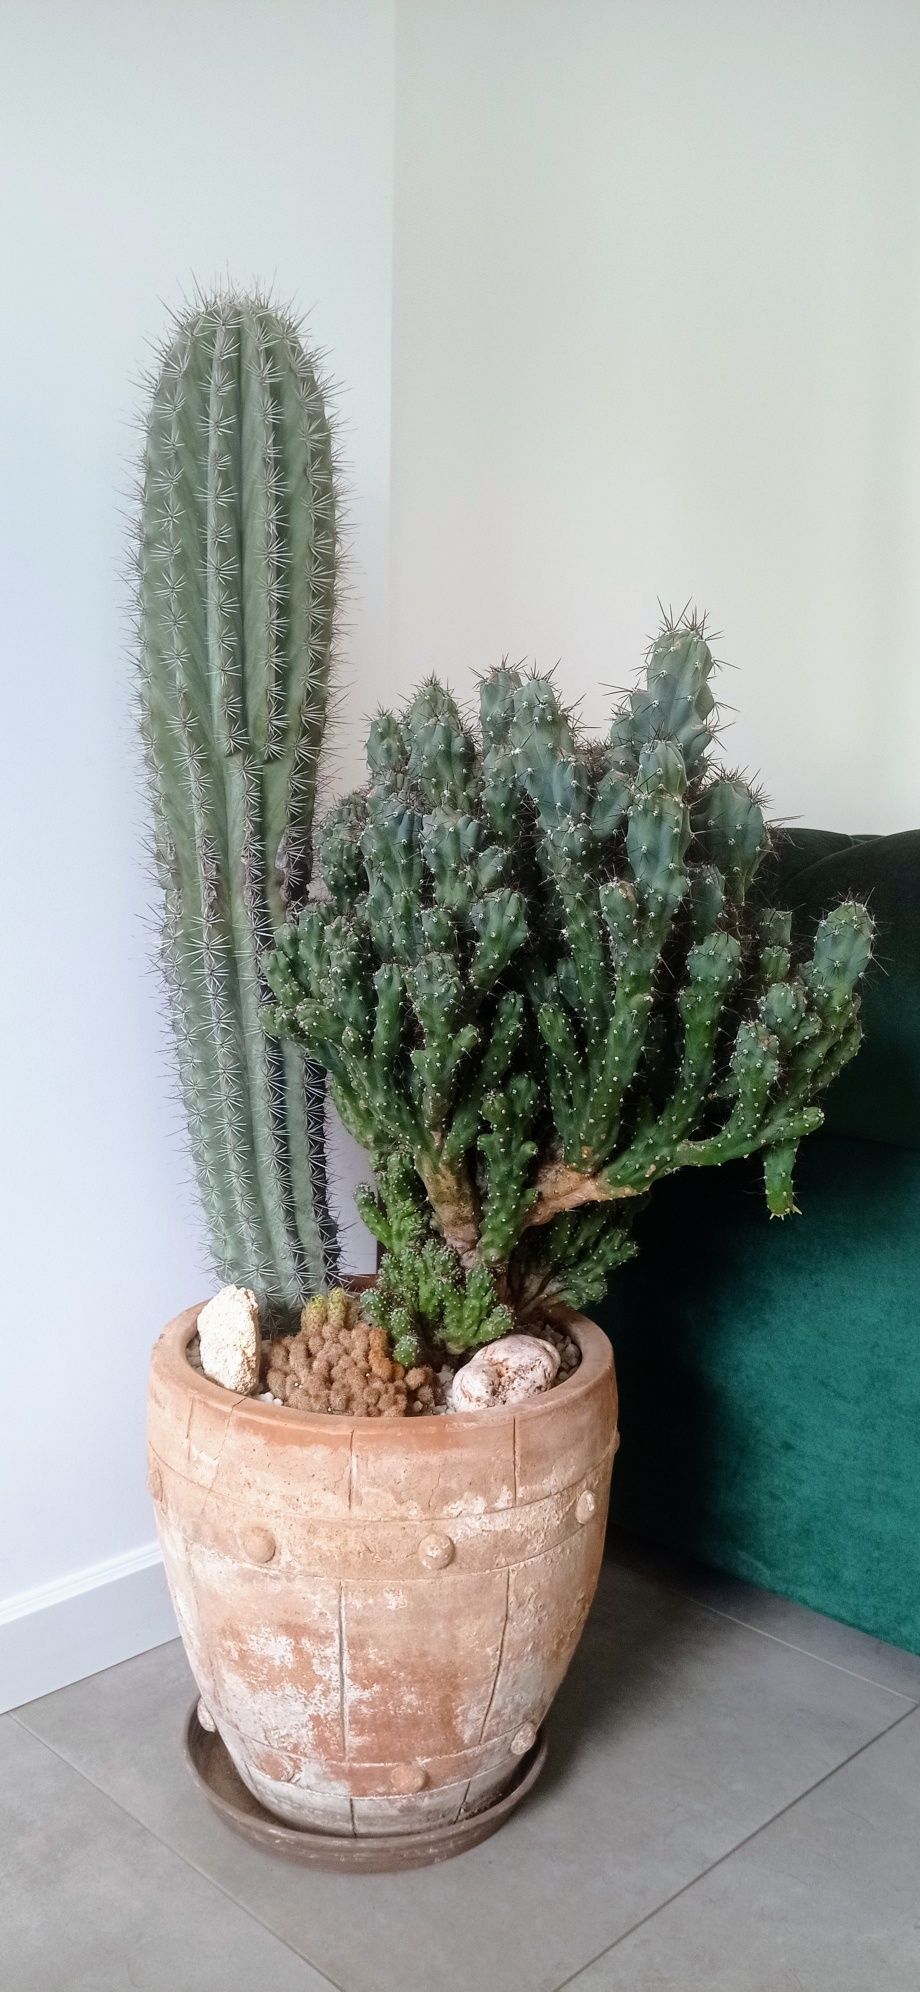 Zestaw kaktusów w donicy - idealny wystrój domu lub na prezent